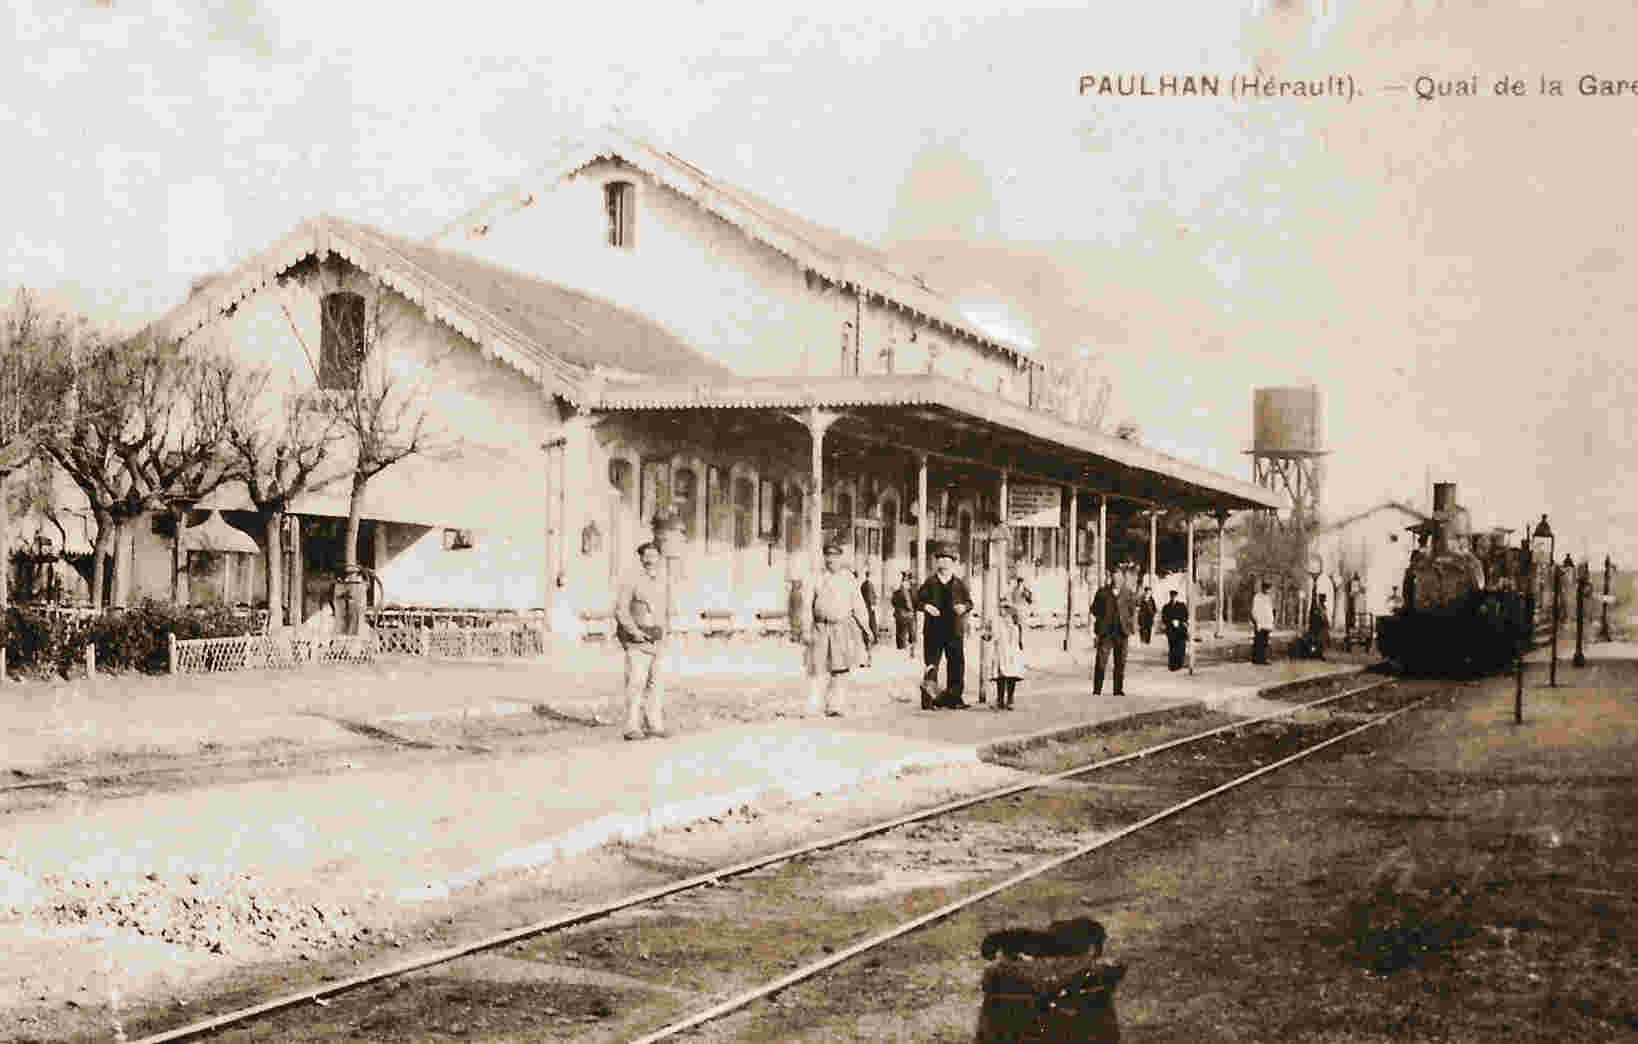 De la gare de Campagnan à la gare de Paulhan